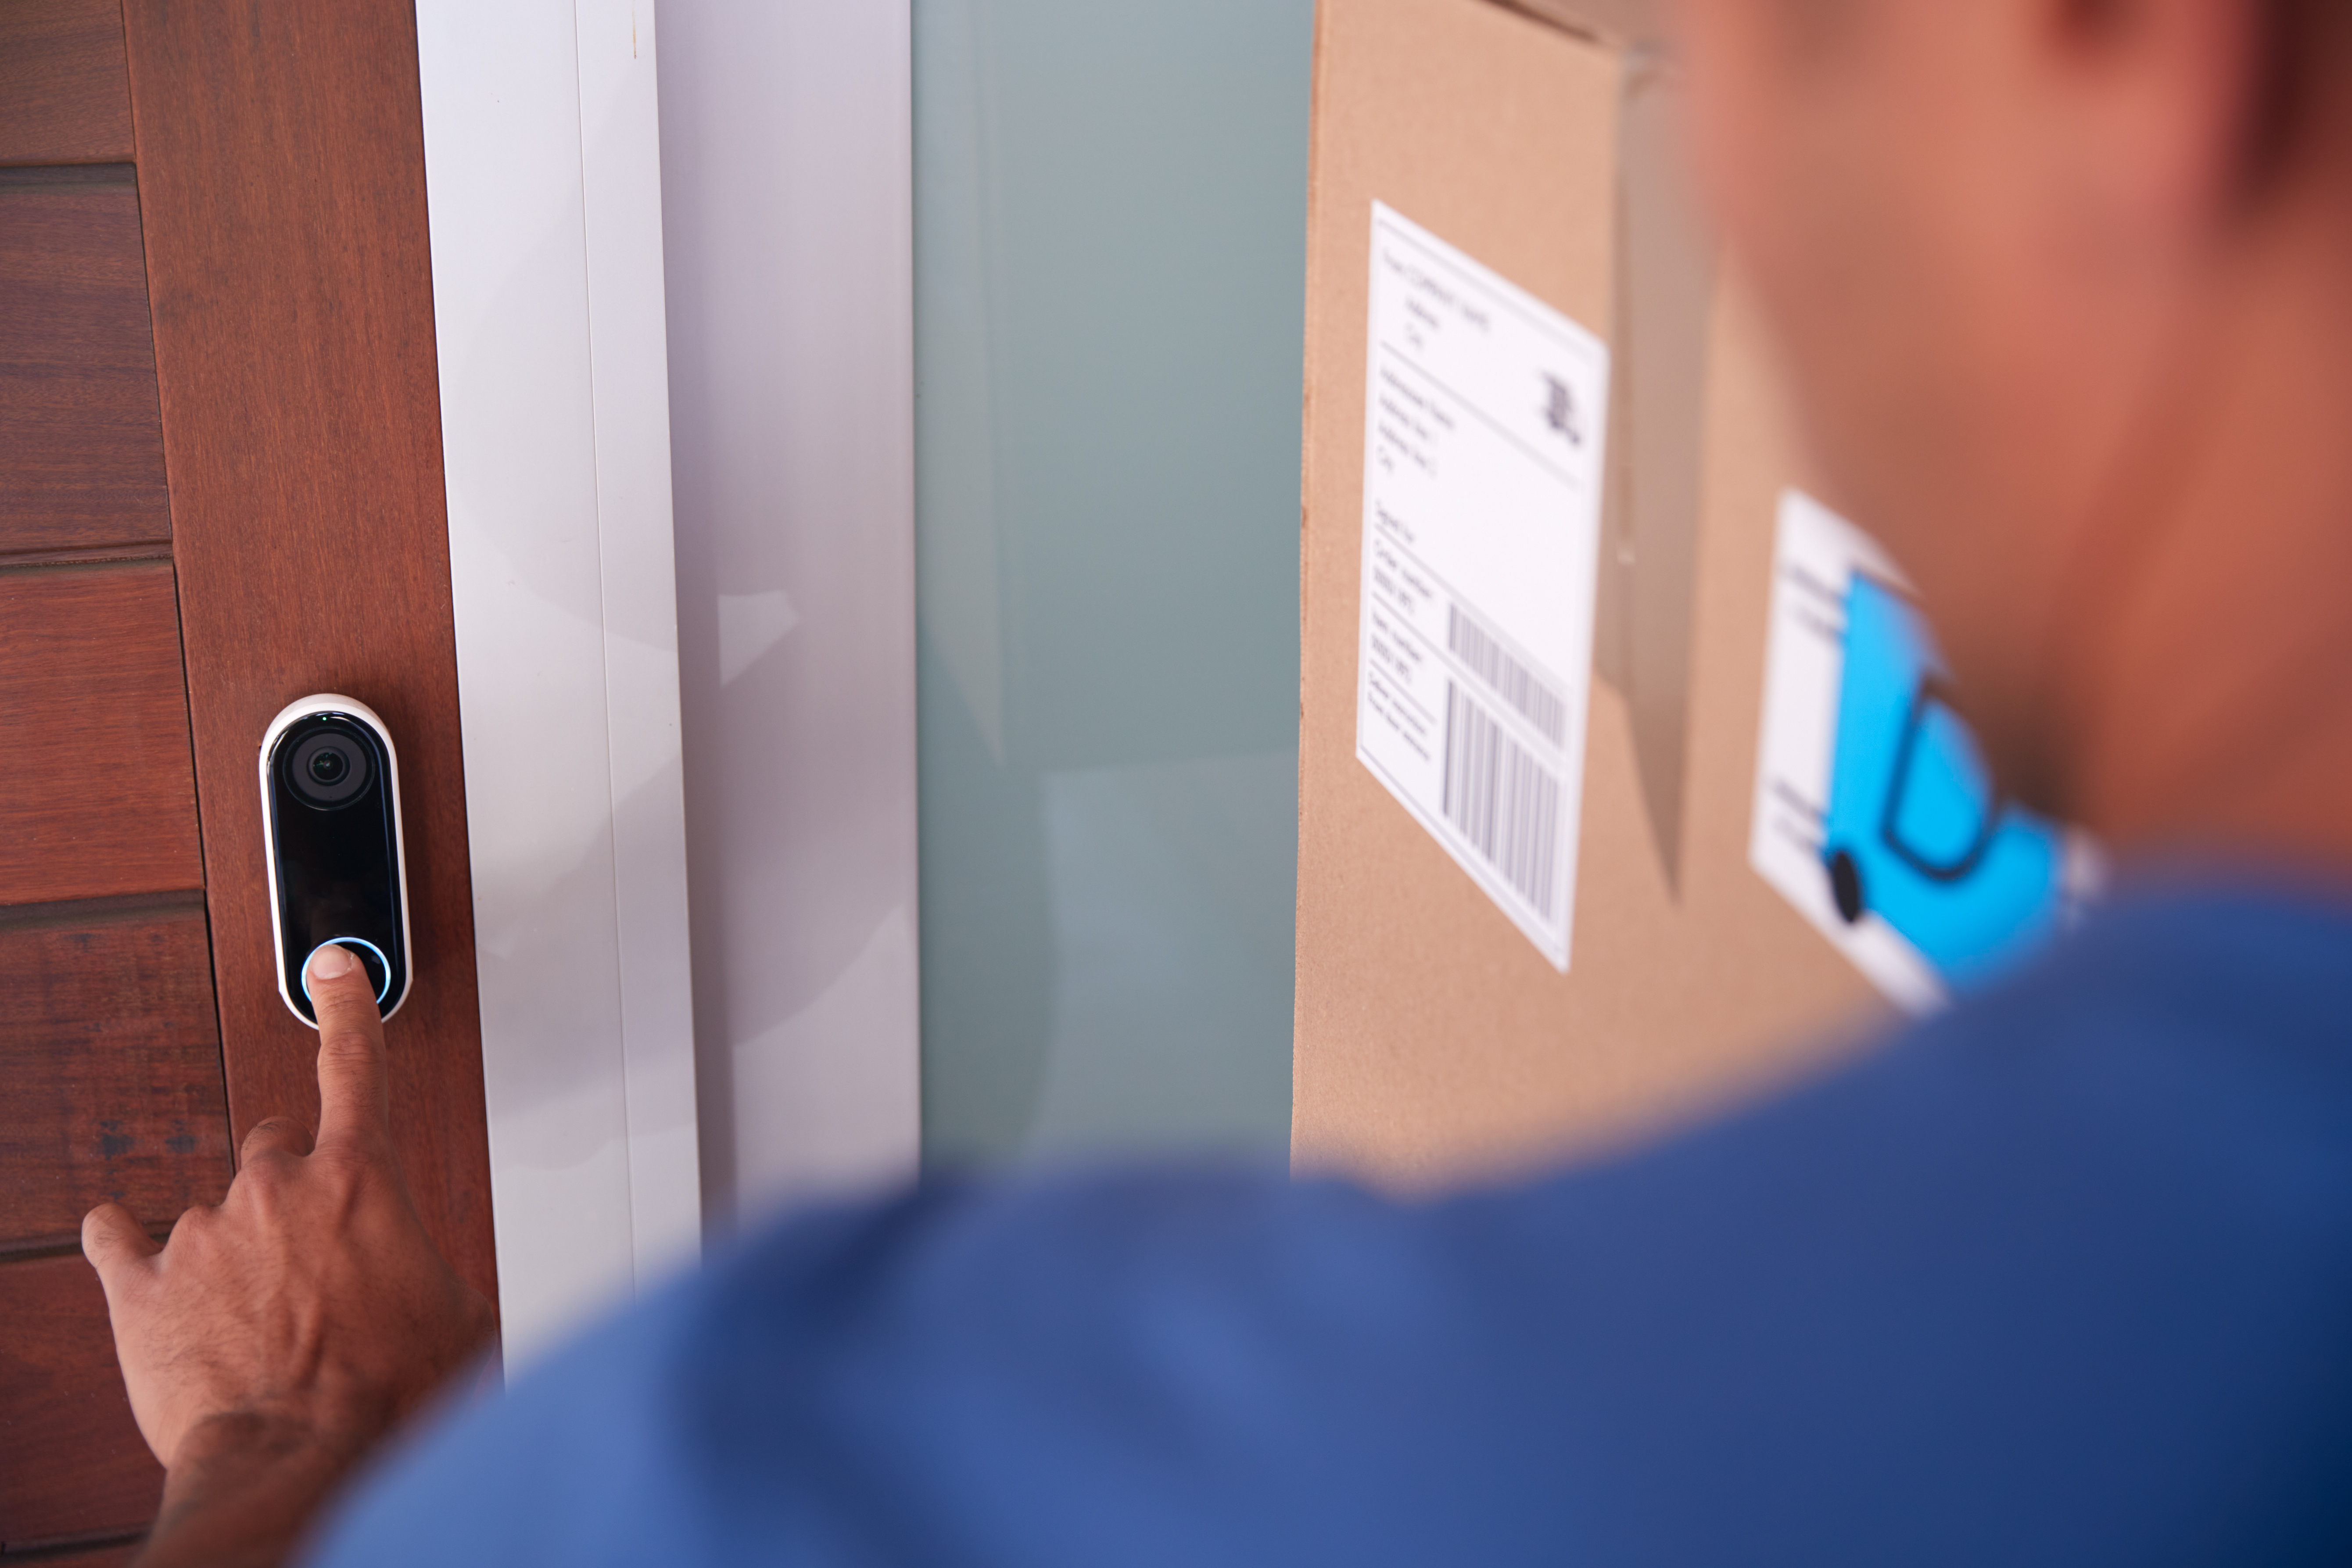 The 5 best smart doorbells to strengthen your home security